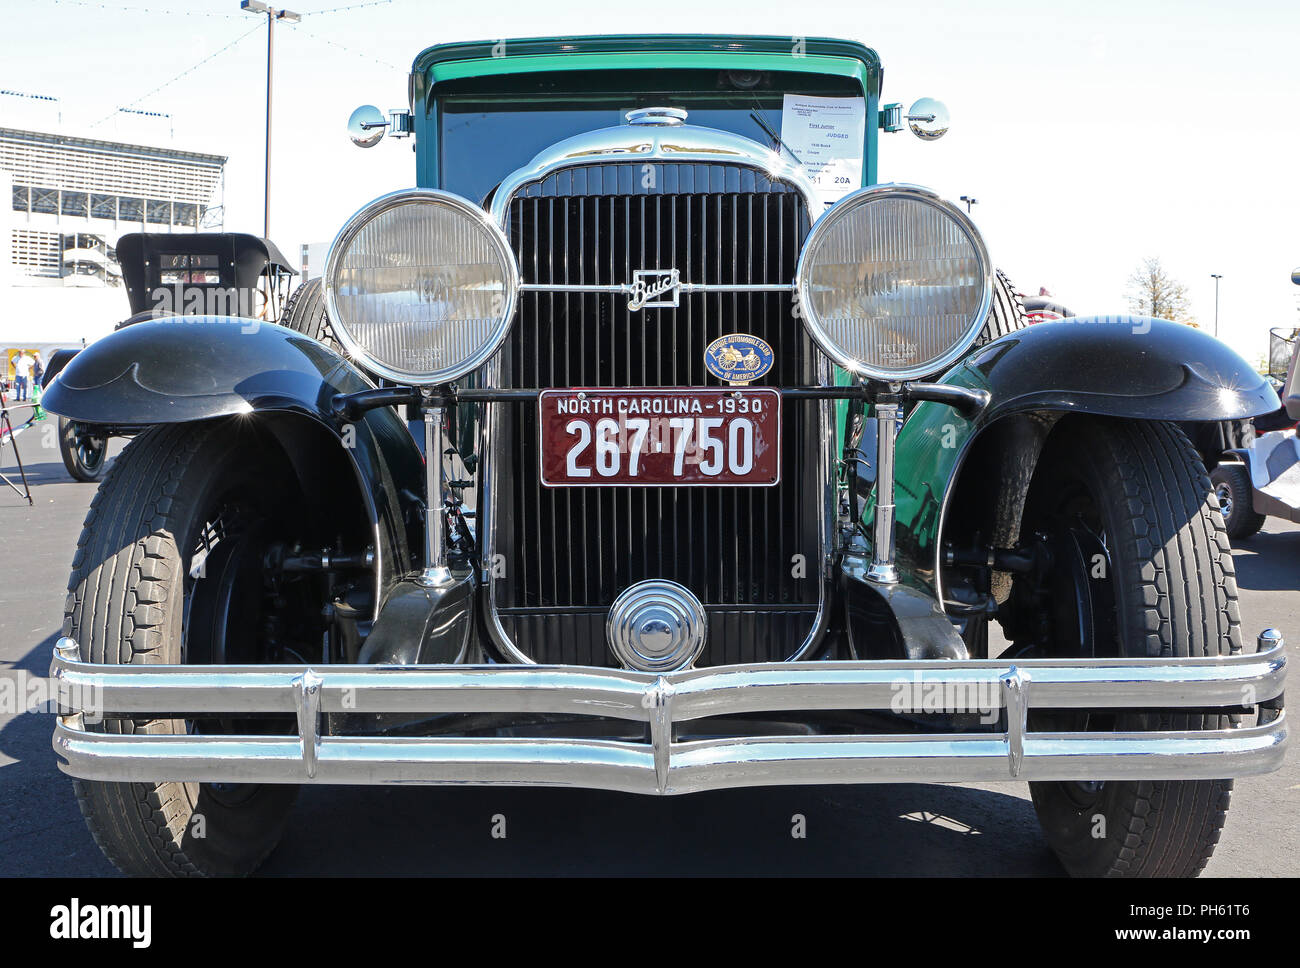 CONCORD, NC - 8 Avril 2017 : une automobile Buick 1930 sur l'affichage à l'Pennzoil AutoFair classic car show s'est tenue à Charlotte Motor Speedway. Banque D'Images